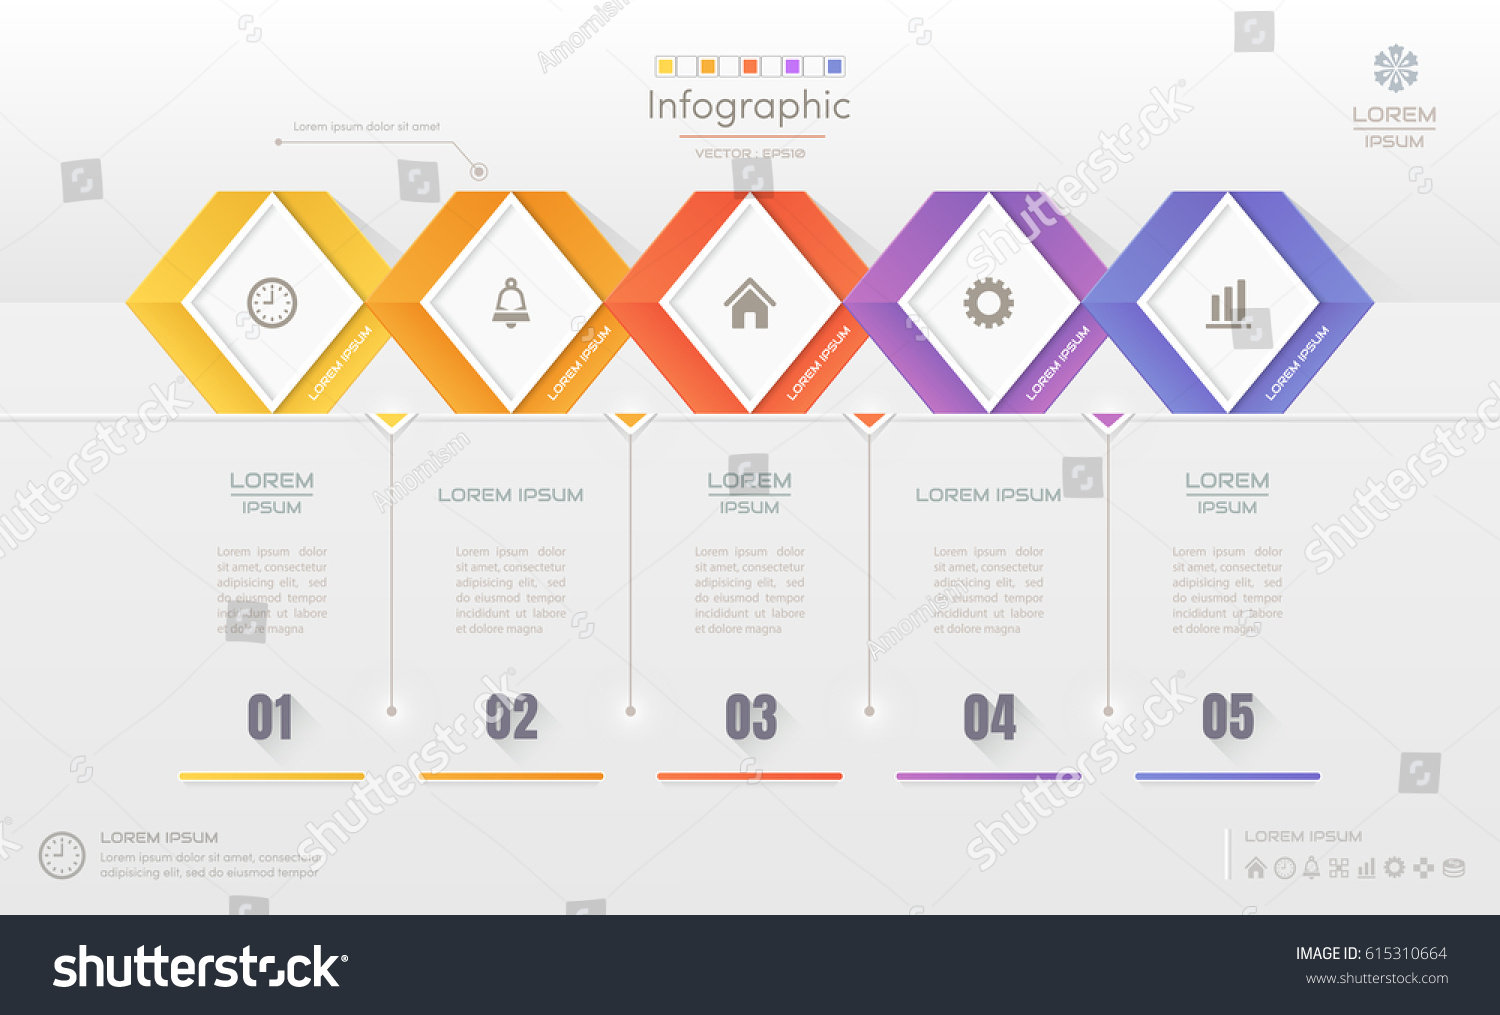 Infographics Design Template Icons Process Diagram Vetor Stock Livre De Direitos 615310664 9846